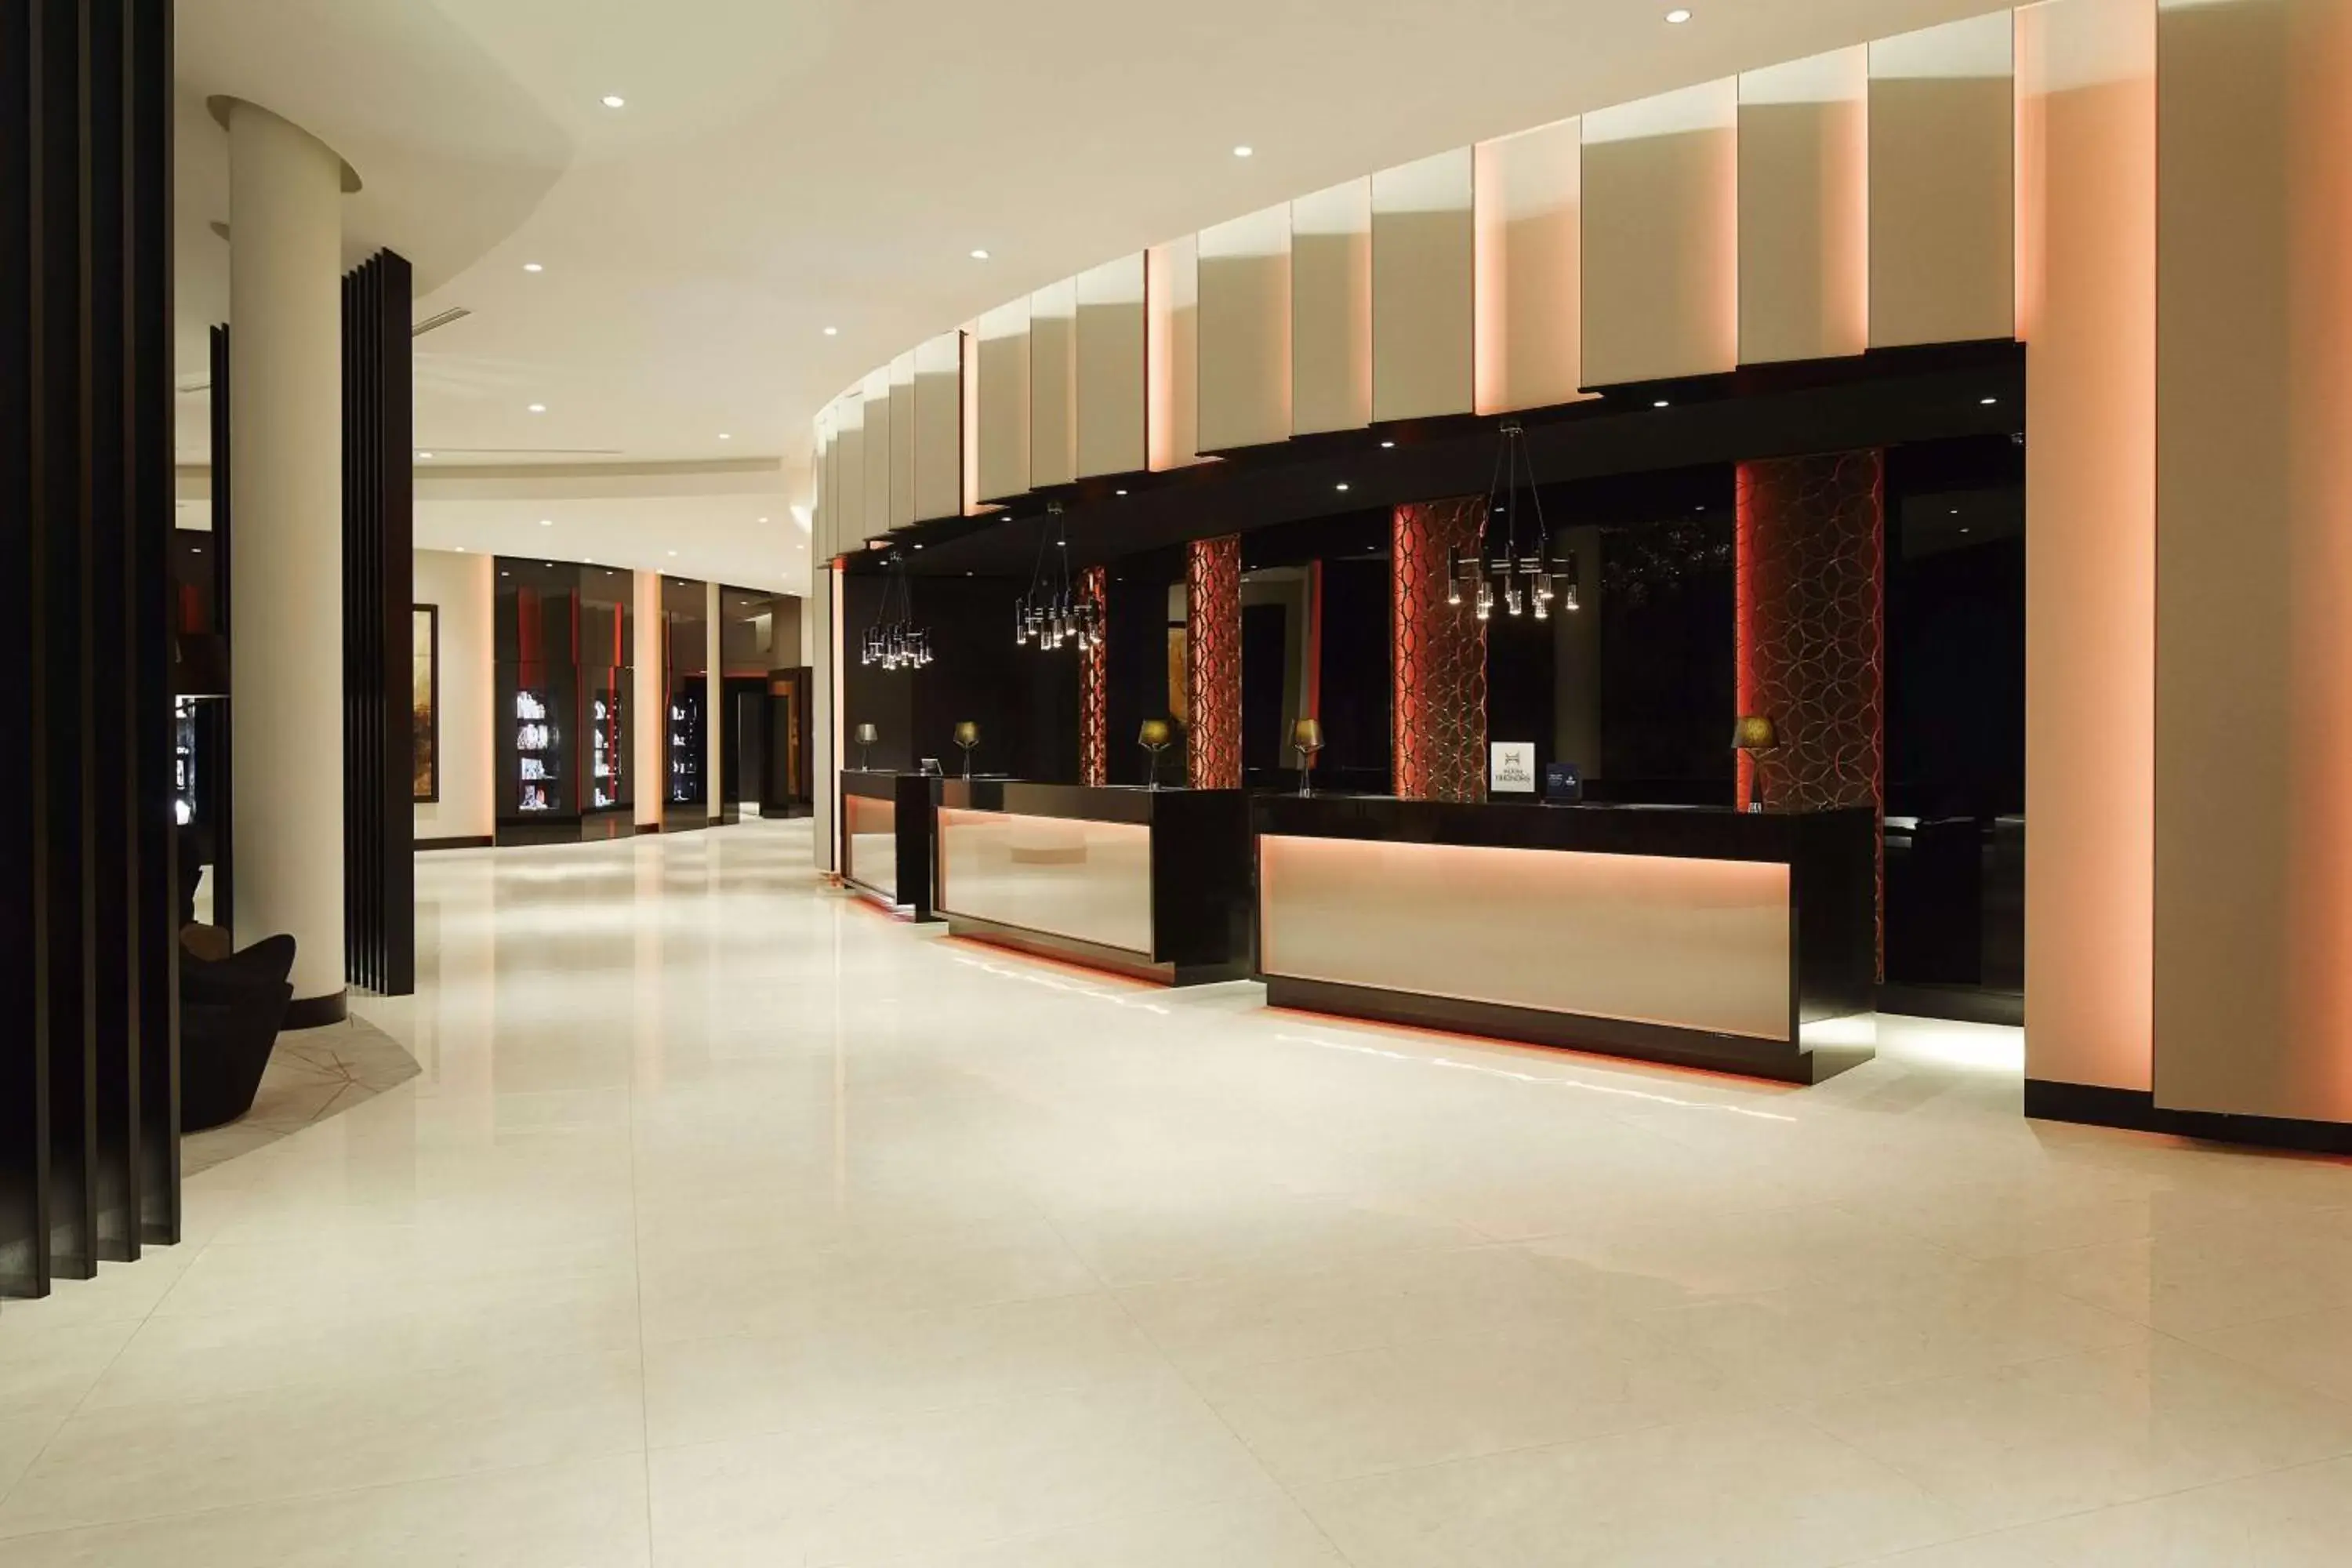 Lobby or reception, Lobby/Reception in Hilton Tallinn Park